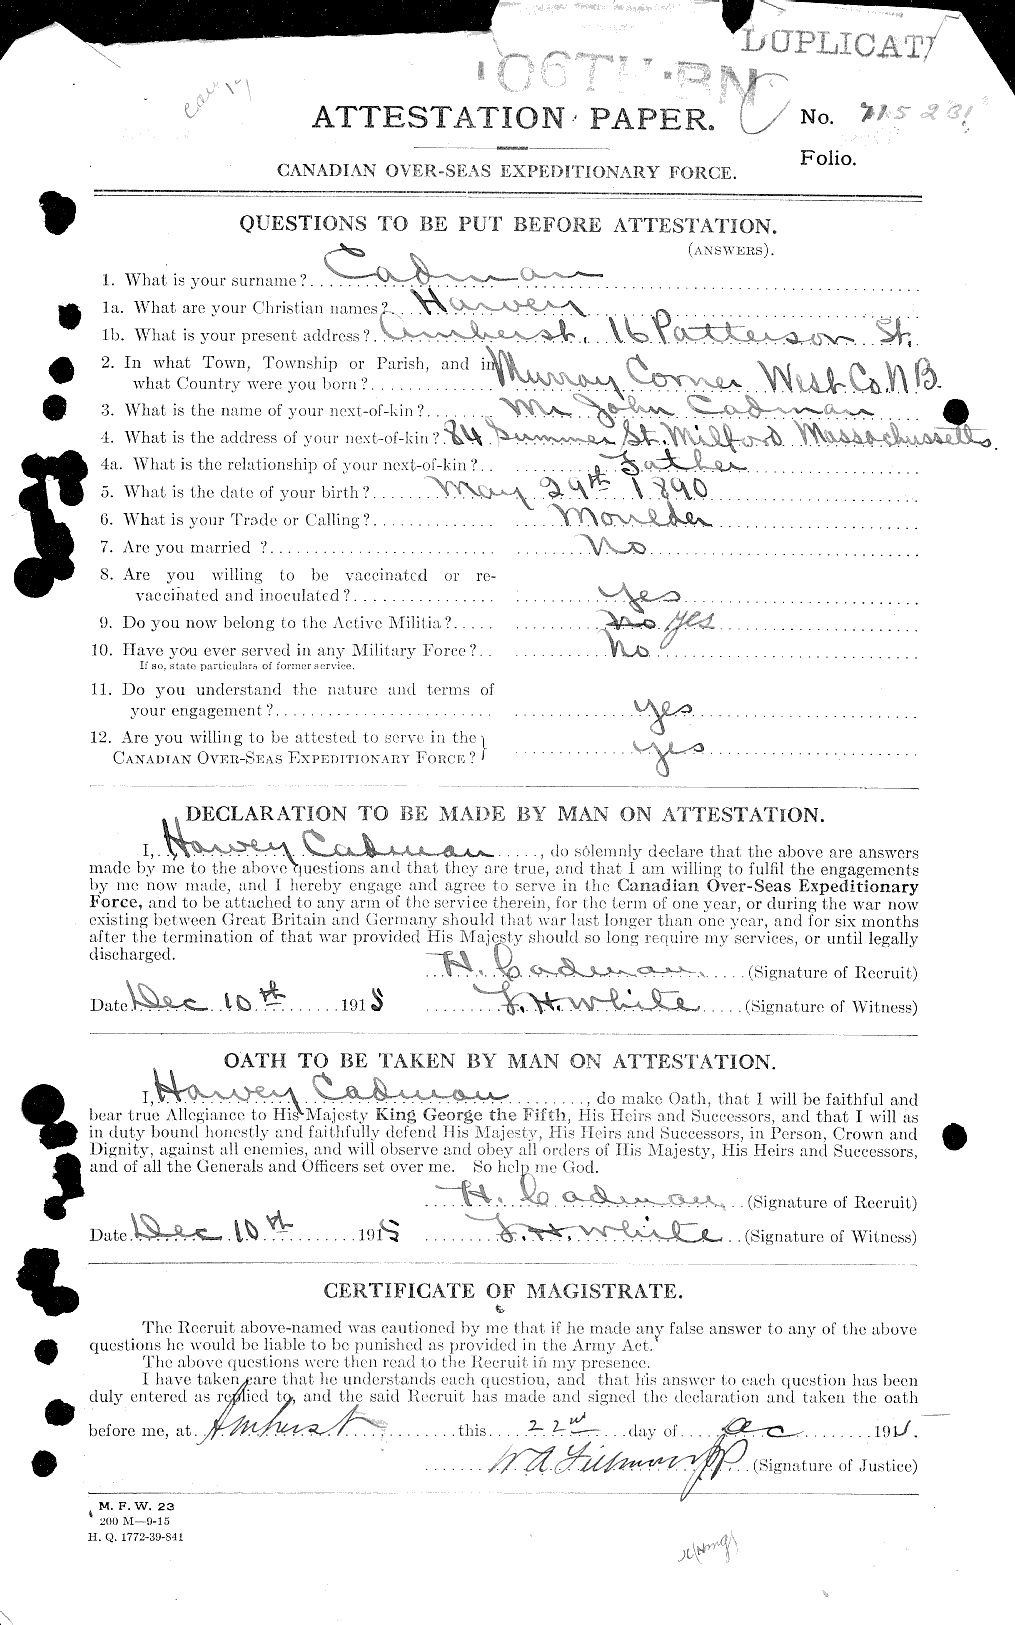 Dossiers du Personnel de la Première Guerre mondiale - CEC 001639a